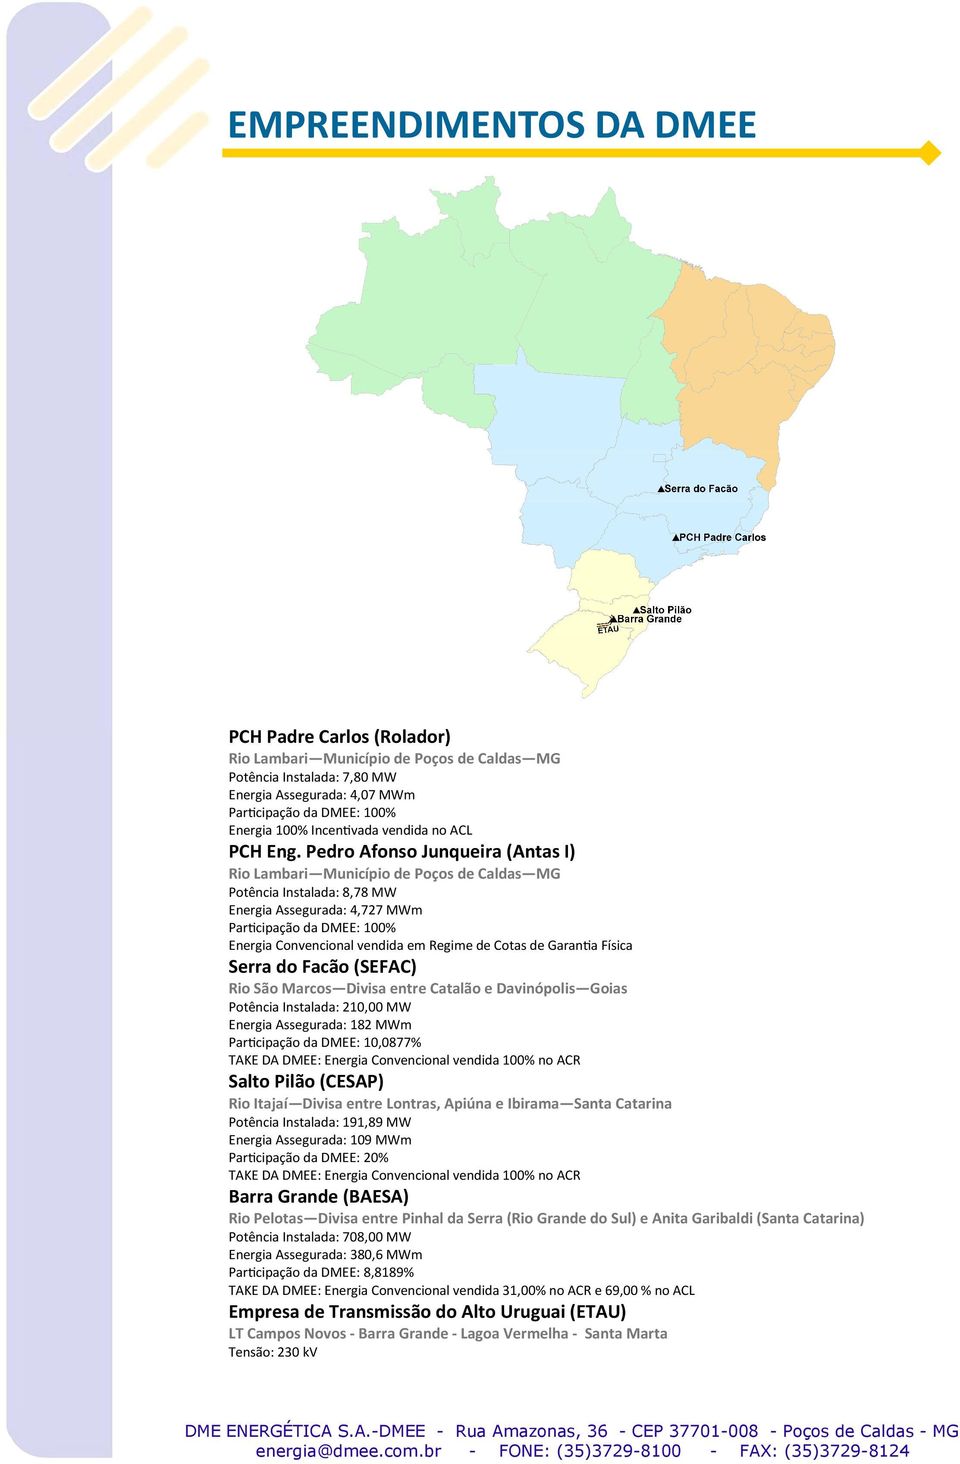 Pedro Afonso Junqueira (Antas I) Rio Lambari Município de Poços de Caldas MG Potência Instalada: 8,78 MW Energia Assegurada: 4,727 MWm Parcipação da DMEE: 100% Energia Convencional vendida em Regime